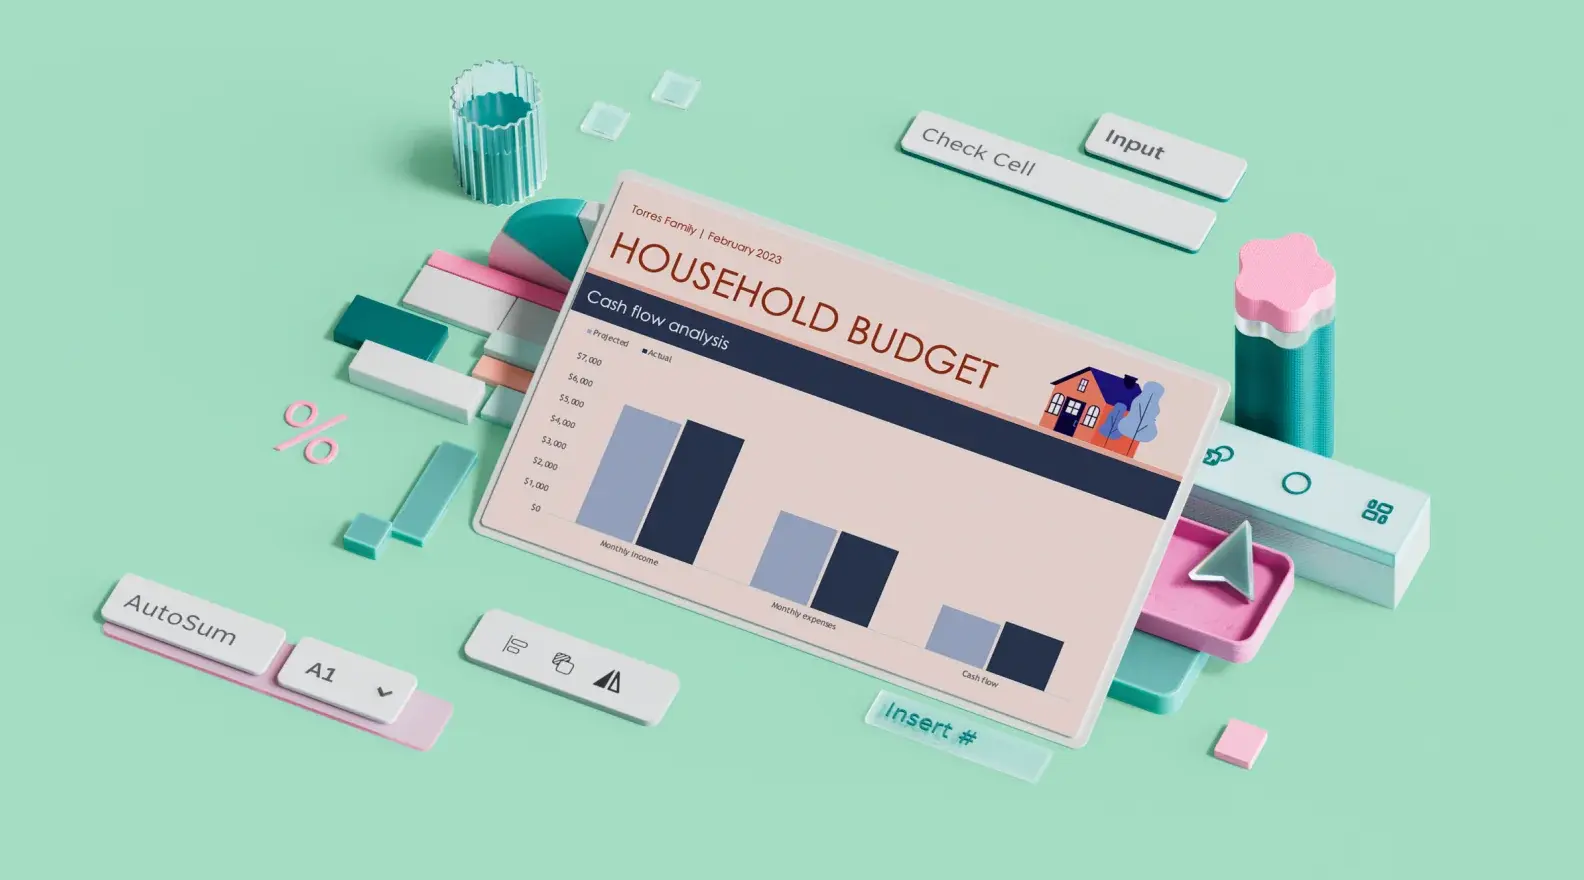 Predloga za proračun gospodinjstva Microsoft Excel, obdana z oblikovnimi elementi 3D